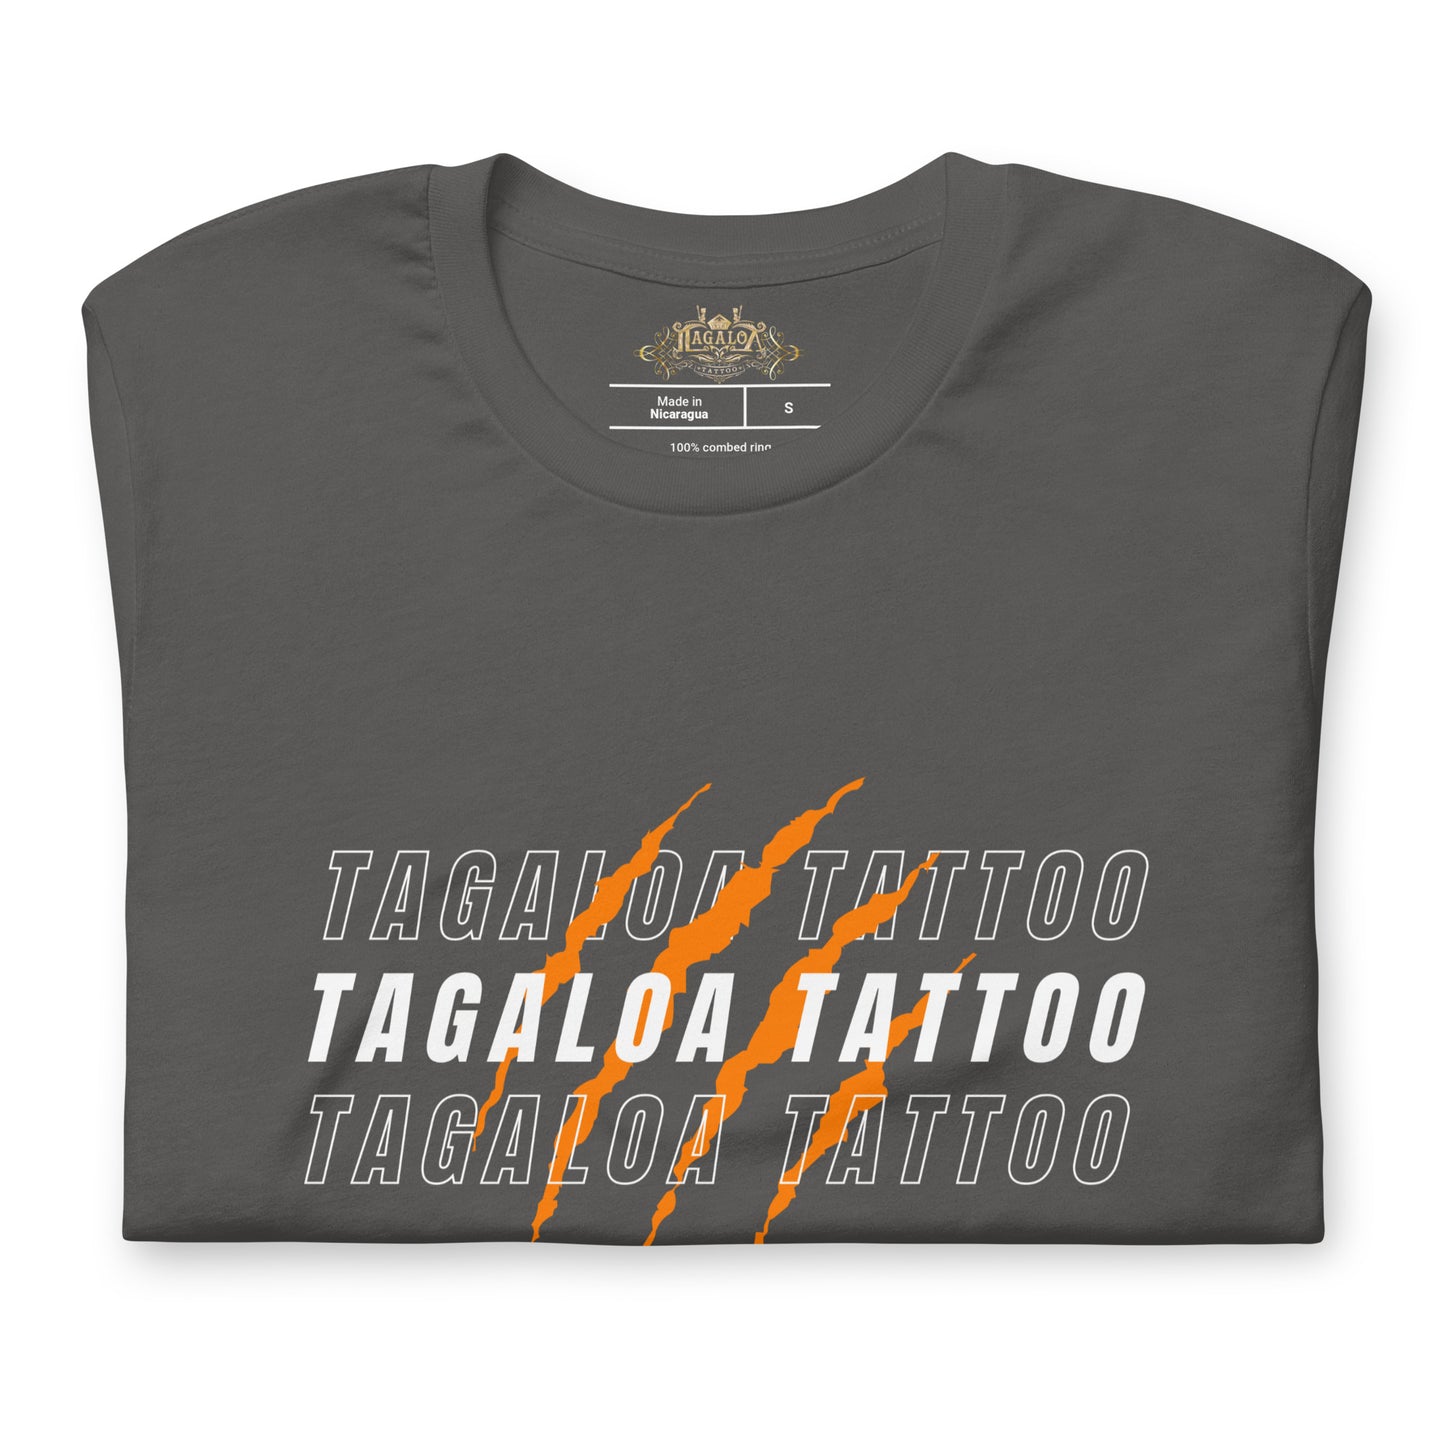 Tagaloa Tattoo Scratched T-shirt